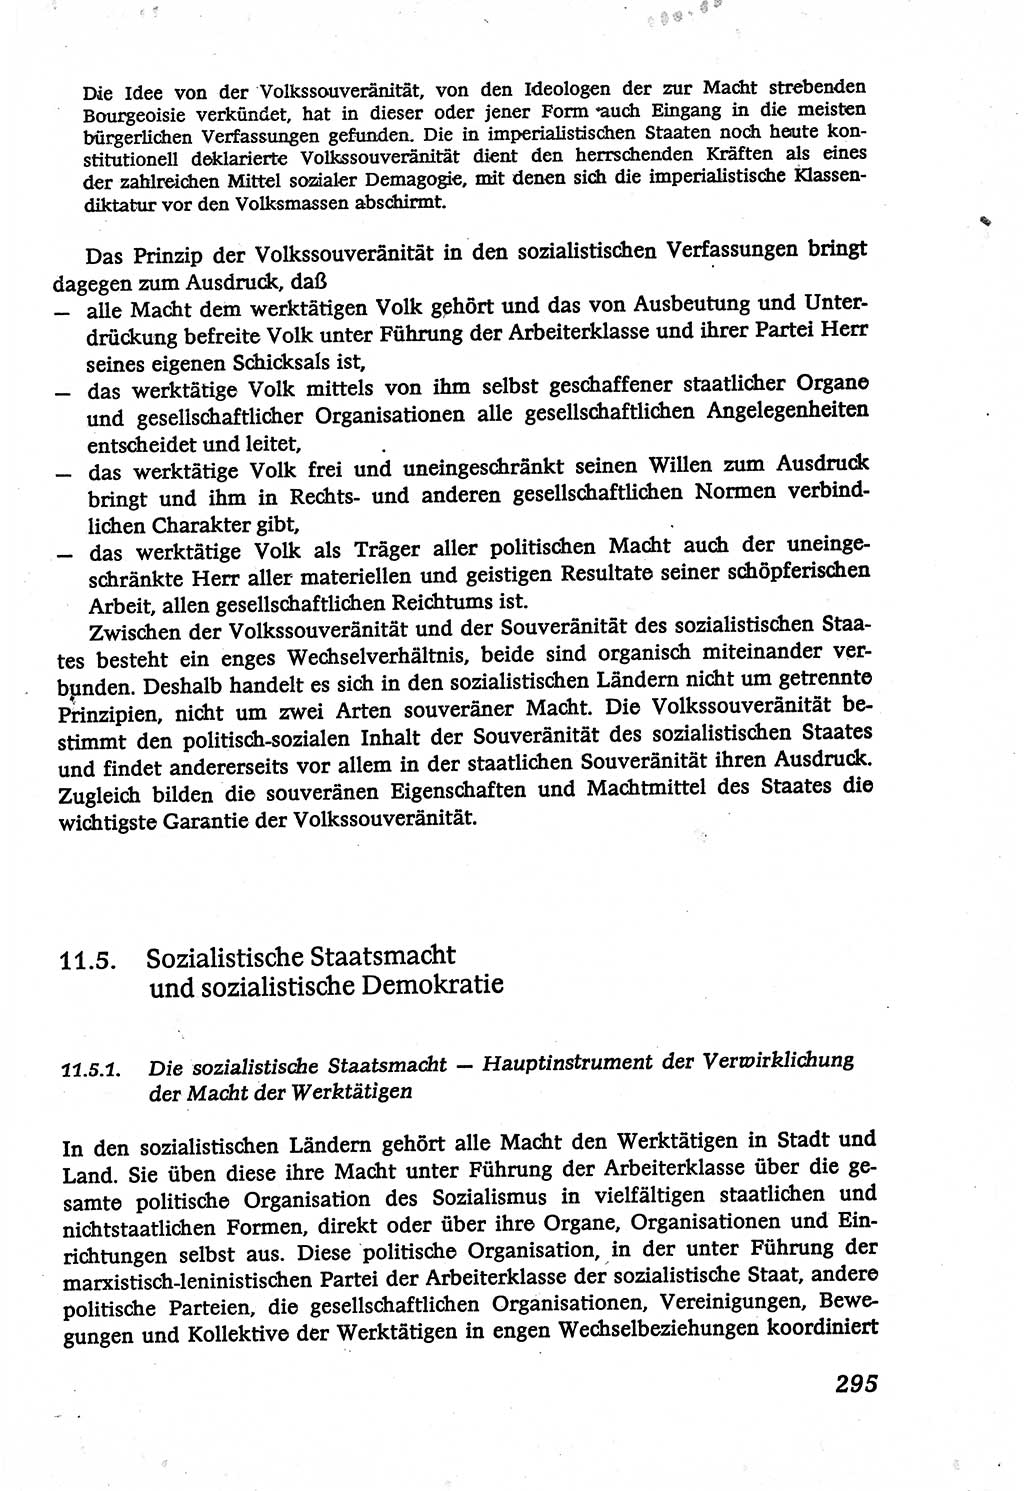 Marxistisch-leninistische (ML) Staats- und Rechtstheorie [Deutsche Demokratische Republik (DDR)], Lehrbuch 1980, Seite 295 (ML St.-R.-Th. DDR Lb. 1980, S. 295)